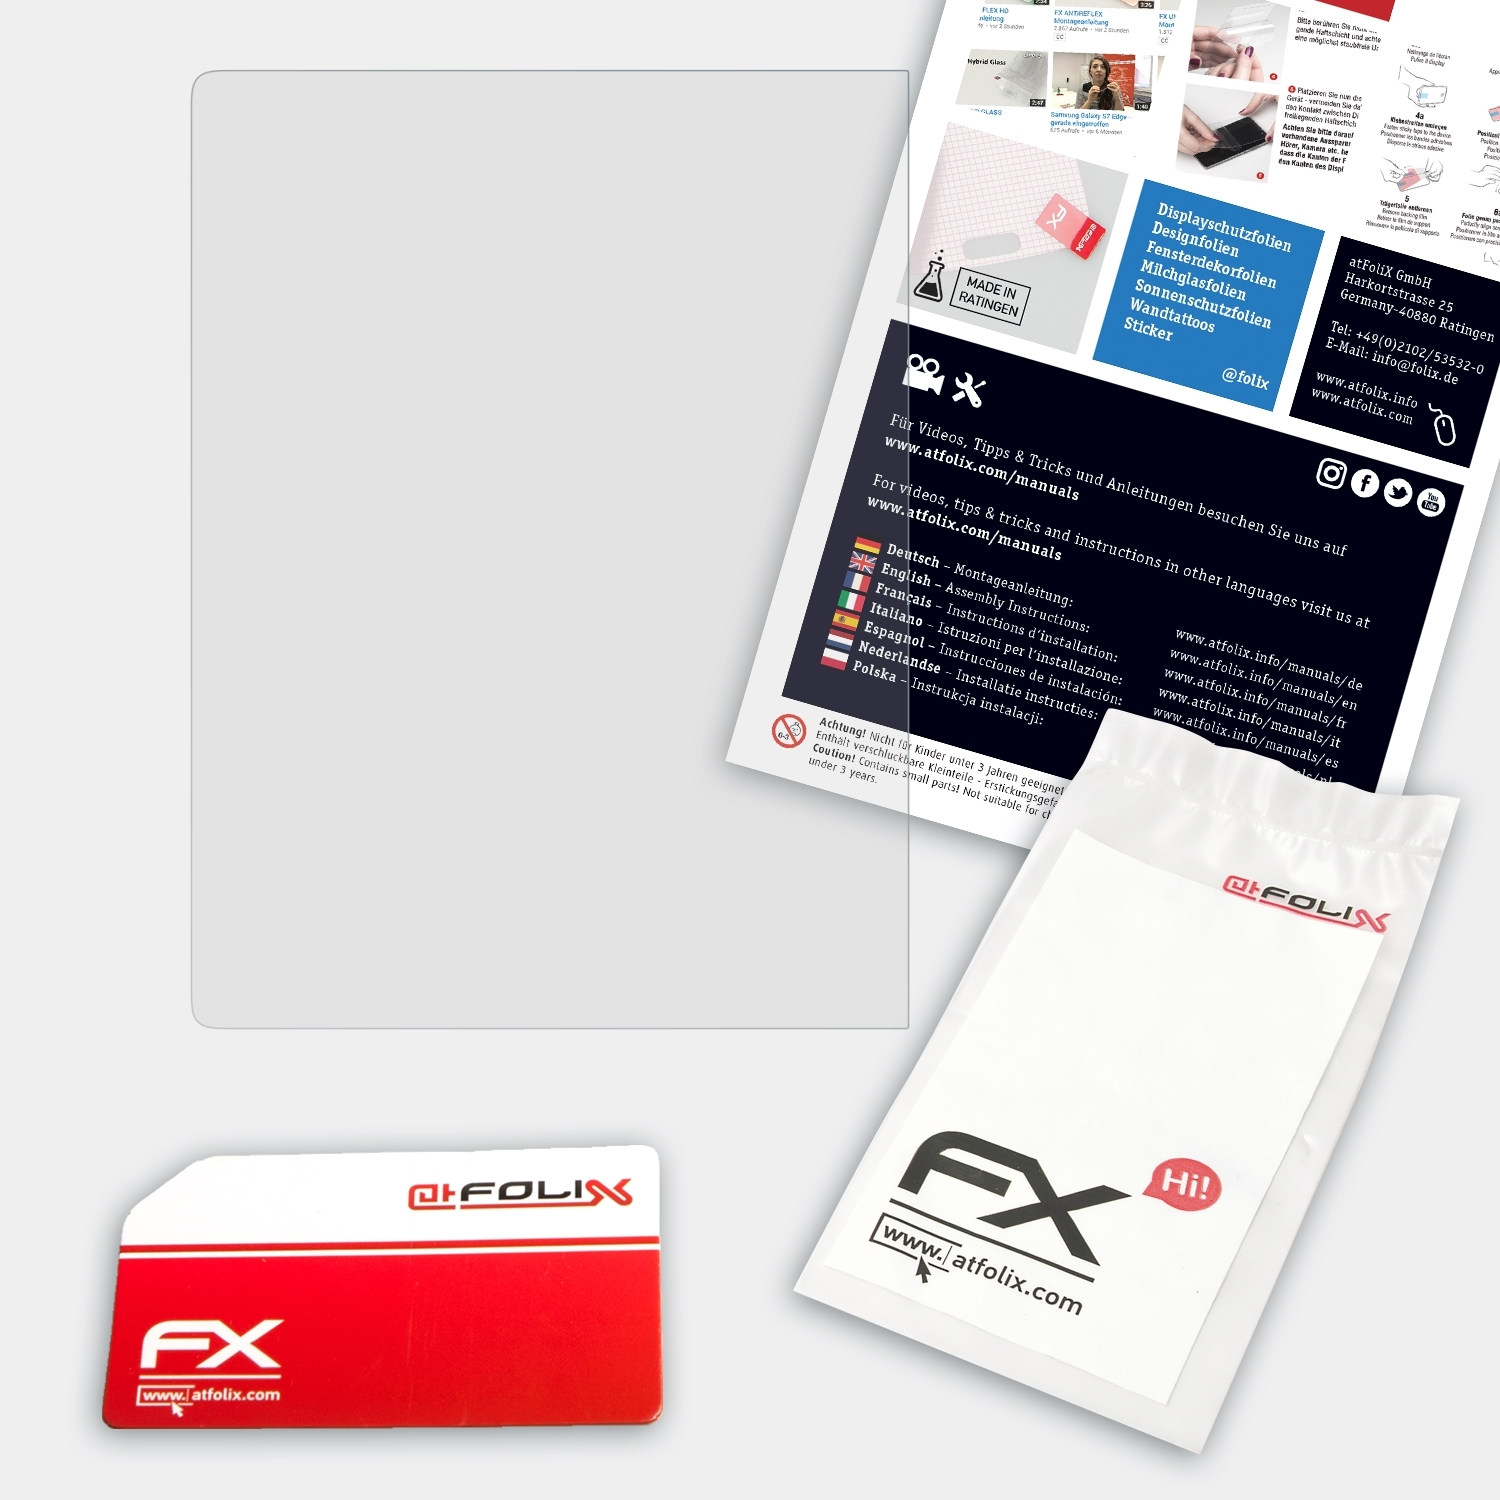 FX-Hybrid-Glass PocketBook Schutzglas(für InkPad) ATFOLIX